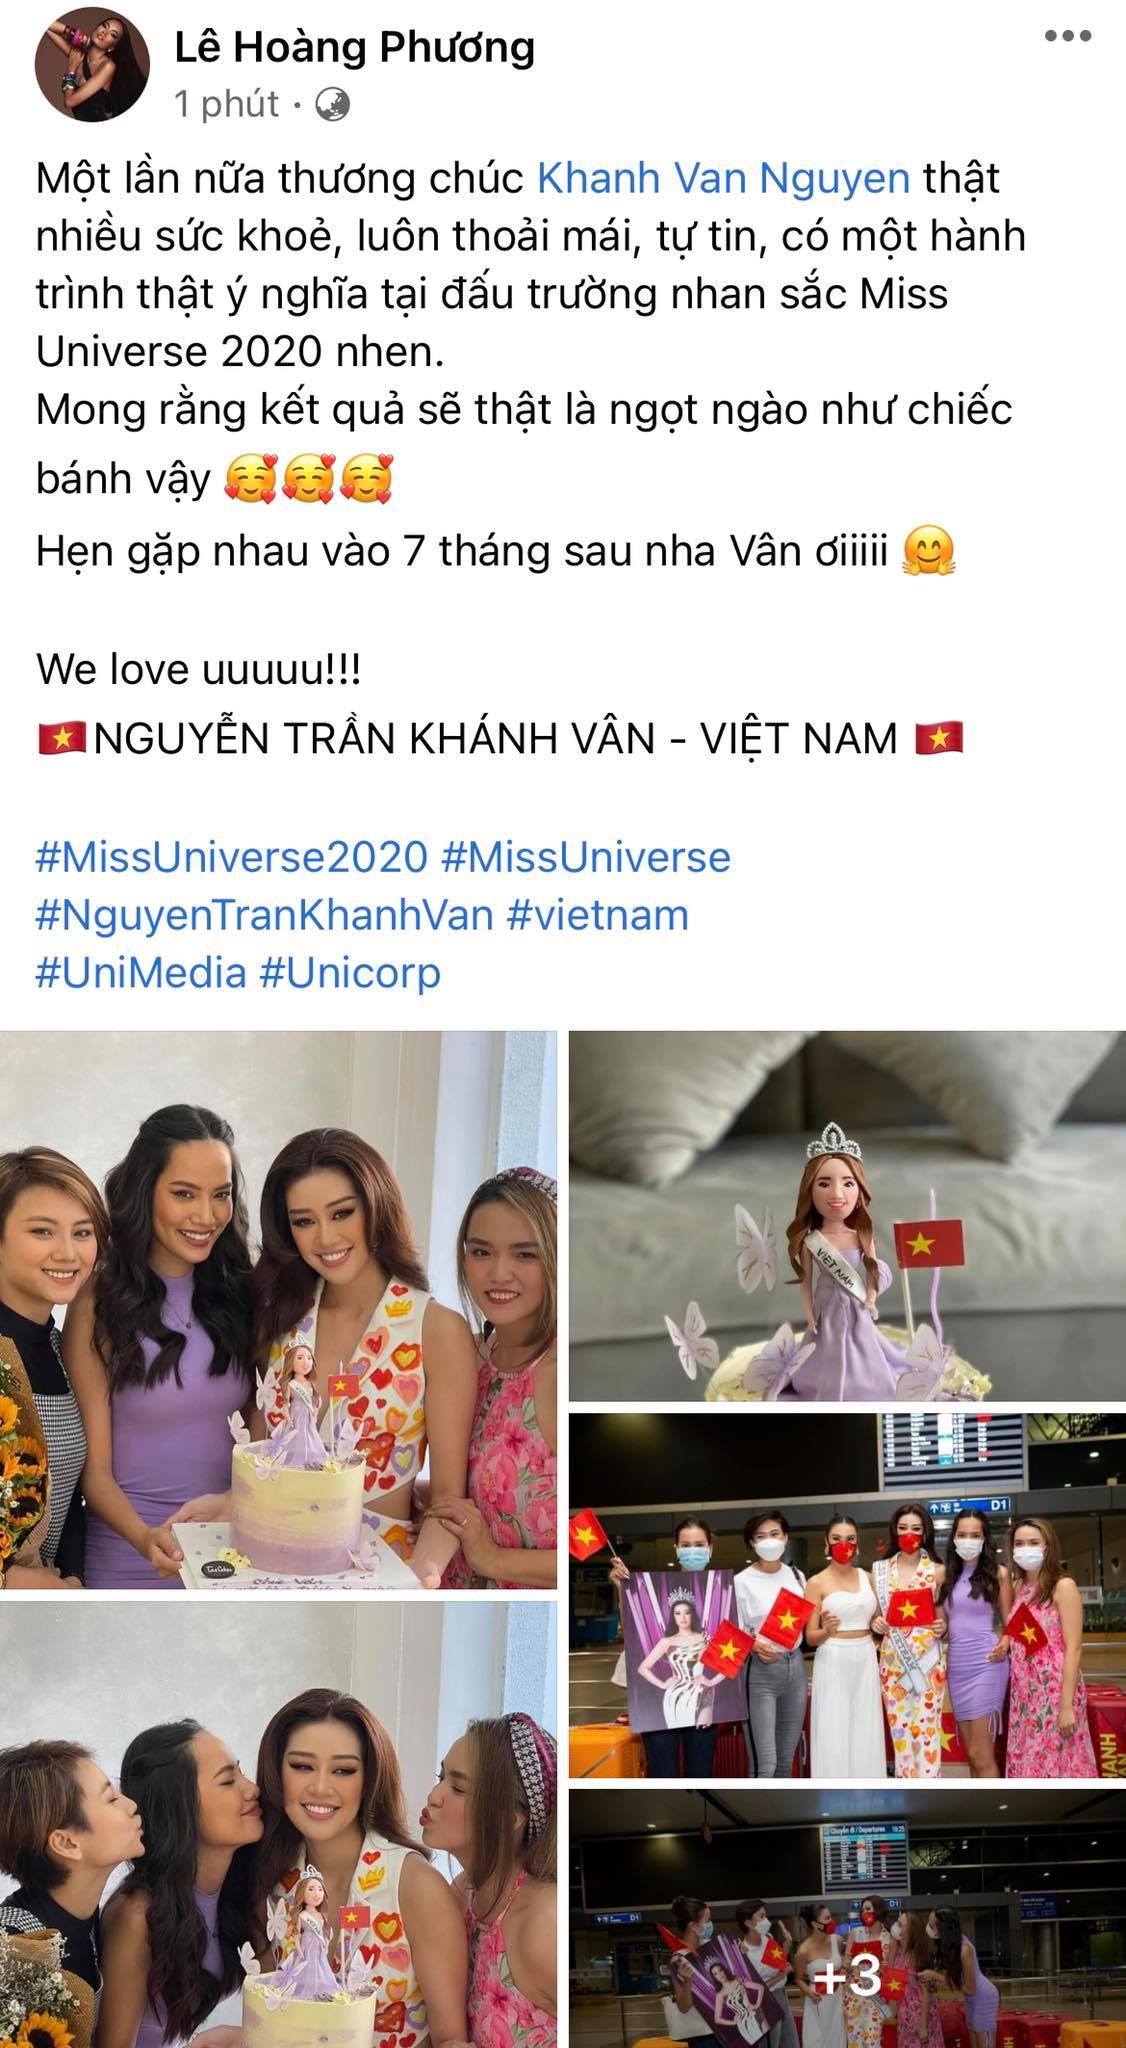 Dàn sao Việt hướng về Khánh Vân, nàng hậu đã chuyển 3 outfit và cập nhật hành trình đến Mỹ dự Miss Universe 2020 - Ảnh 9.